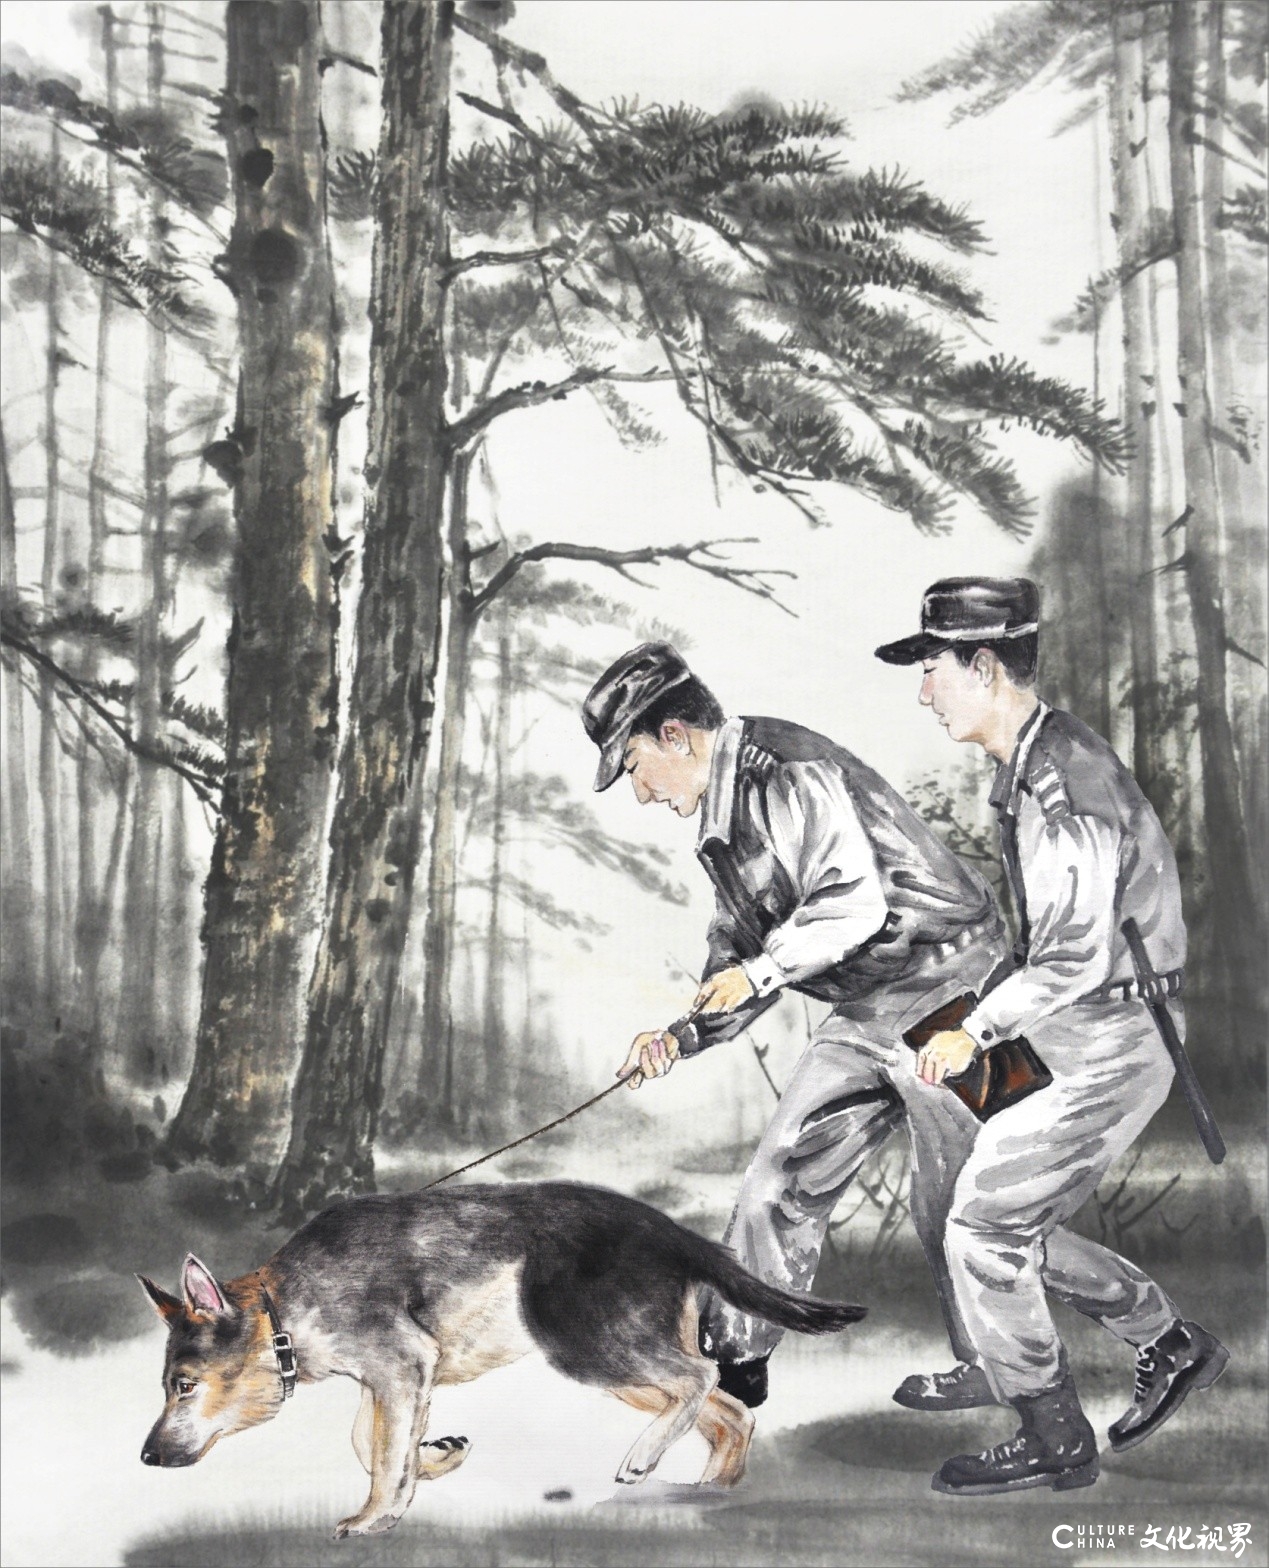 青年画家孙大勇应邀为金曾豪家园动物系列之《追风筝的狗》绘制插画